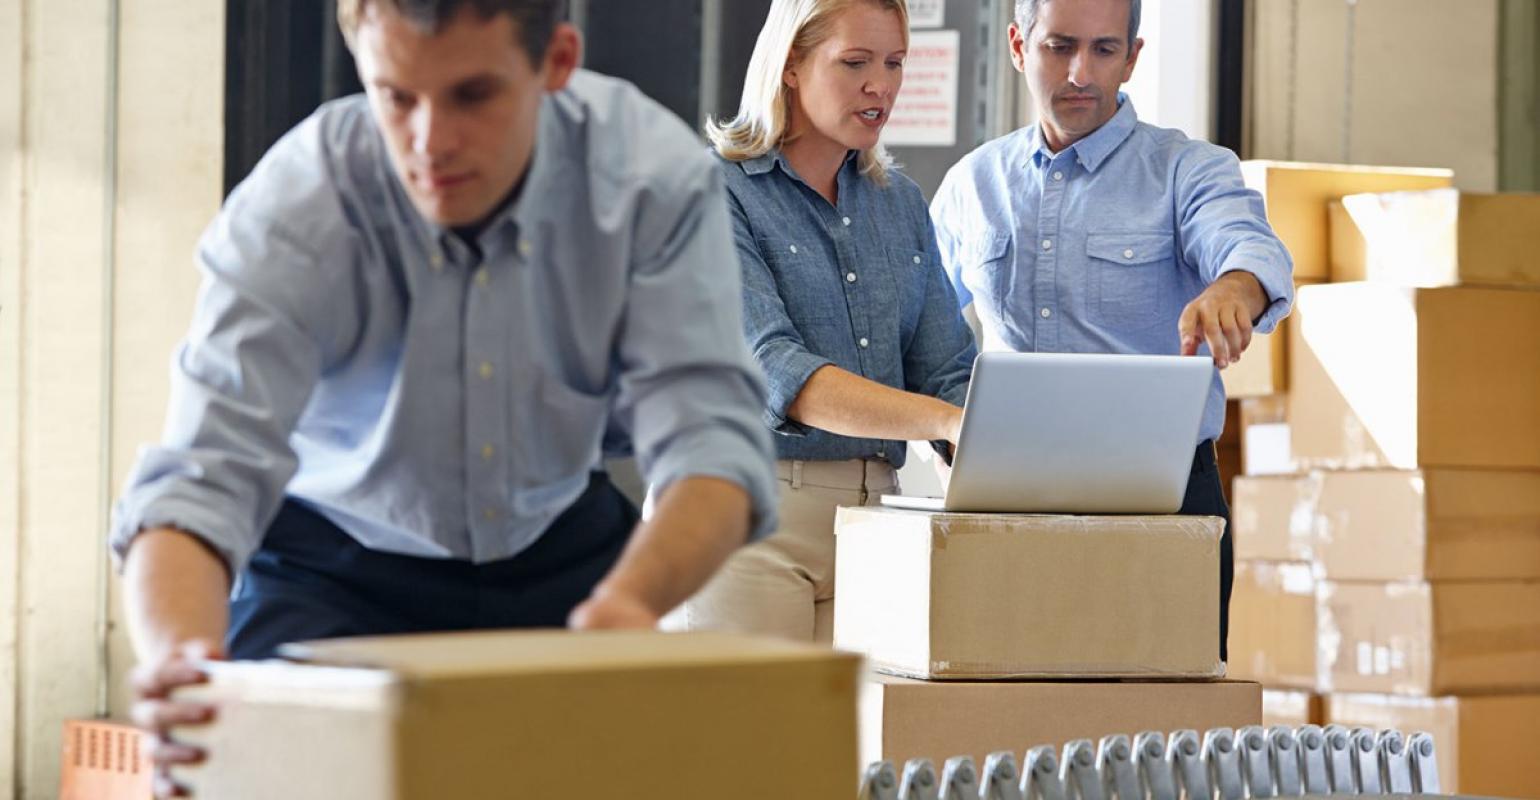 Outsourcing služeb v logistice a skladování - svěřte skladovací a přepravní služby profesionalům!